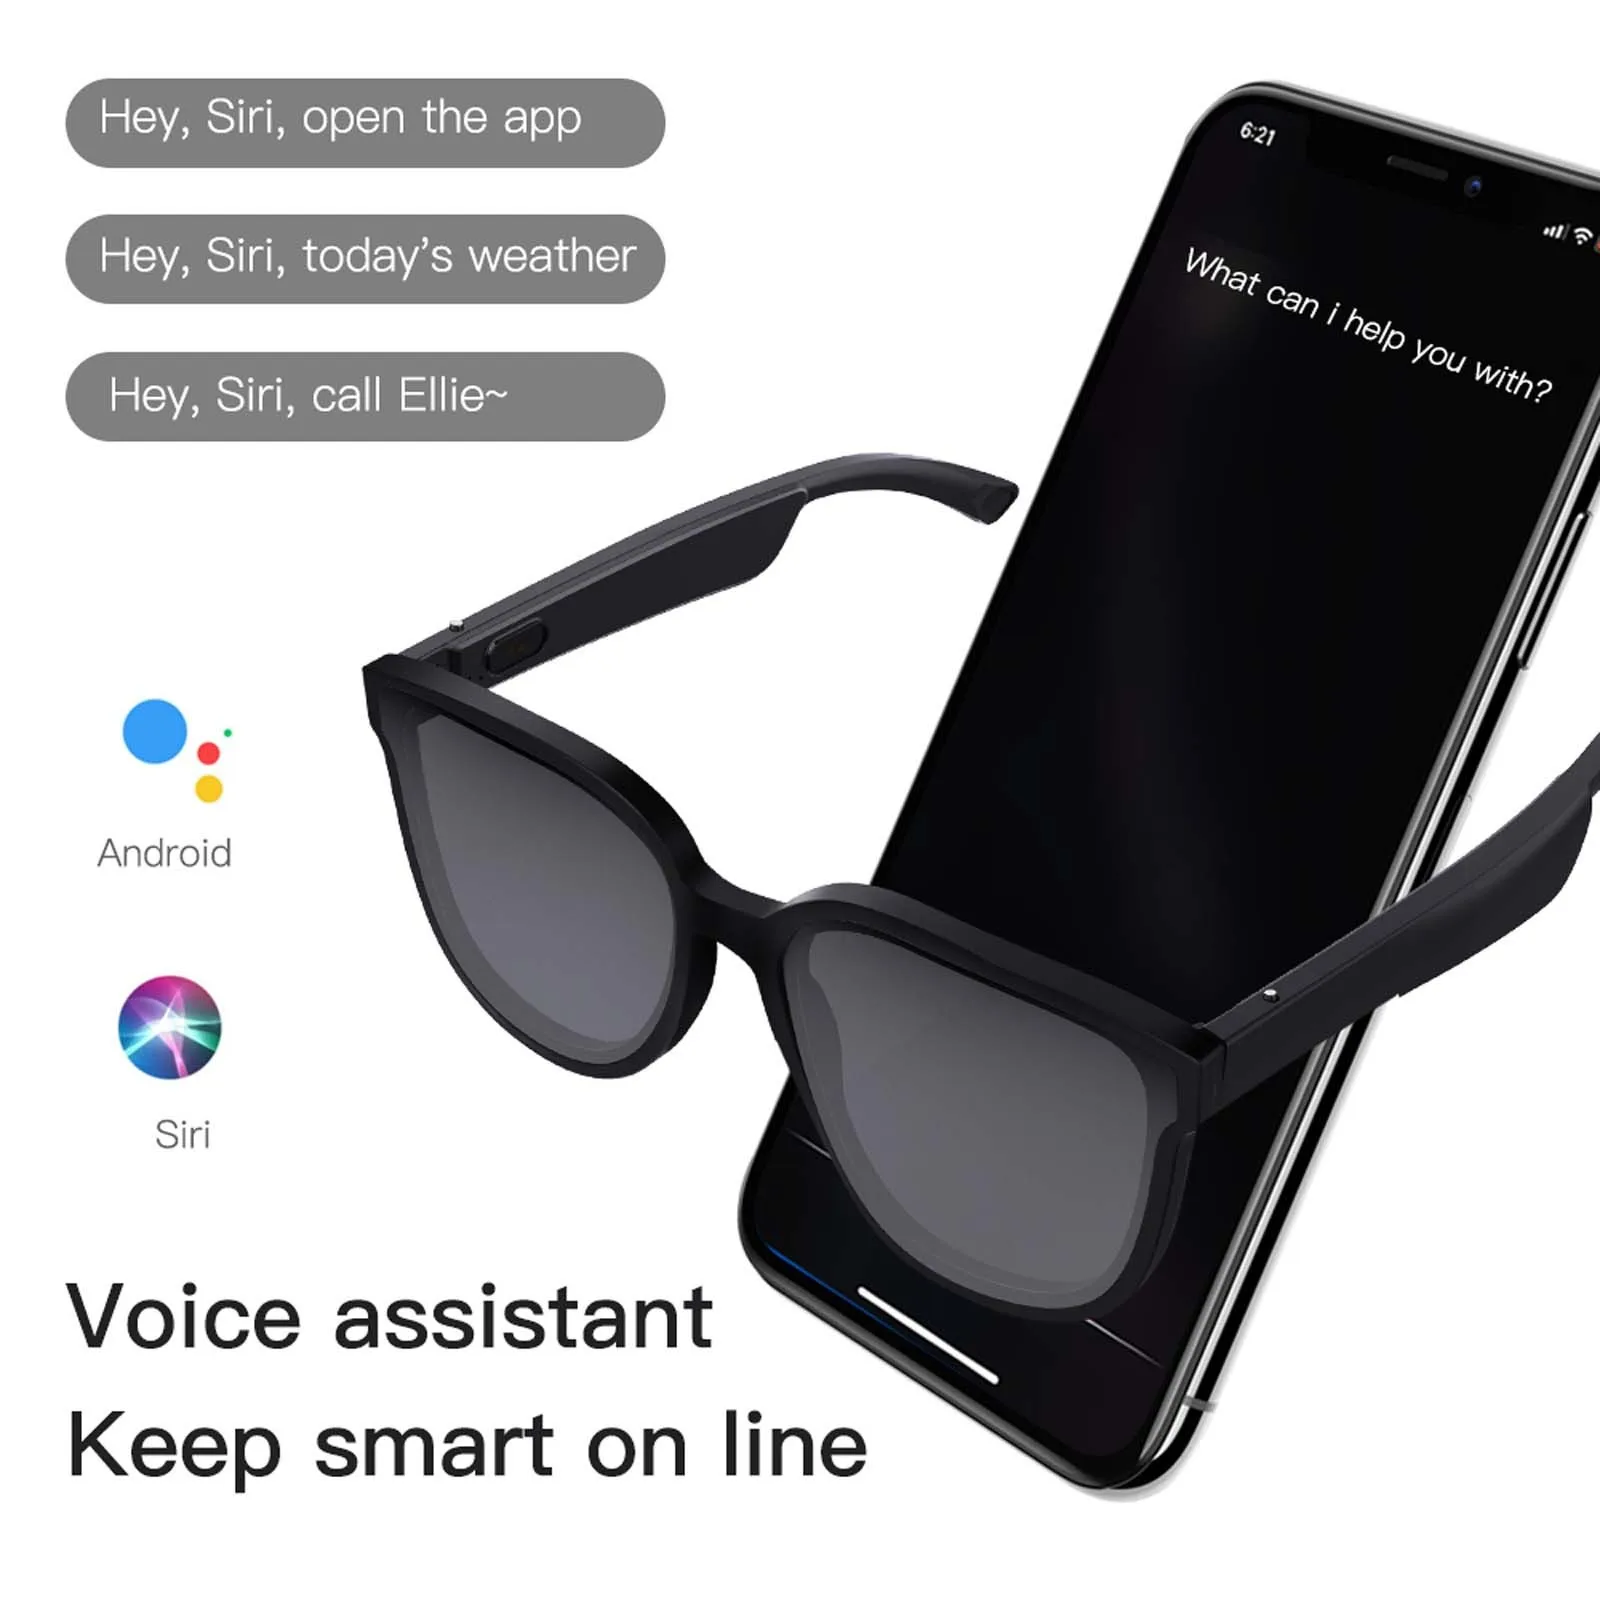 저렴한 스마트 안경 무선 블루투스 음악 헤드셋 오디오 스피커 핸즈프리 통화 헤드폰 선글라스, 안드로이드 및 IOS 용 # G3